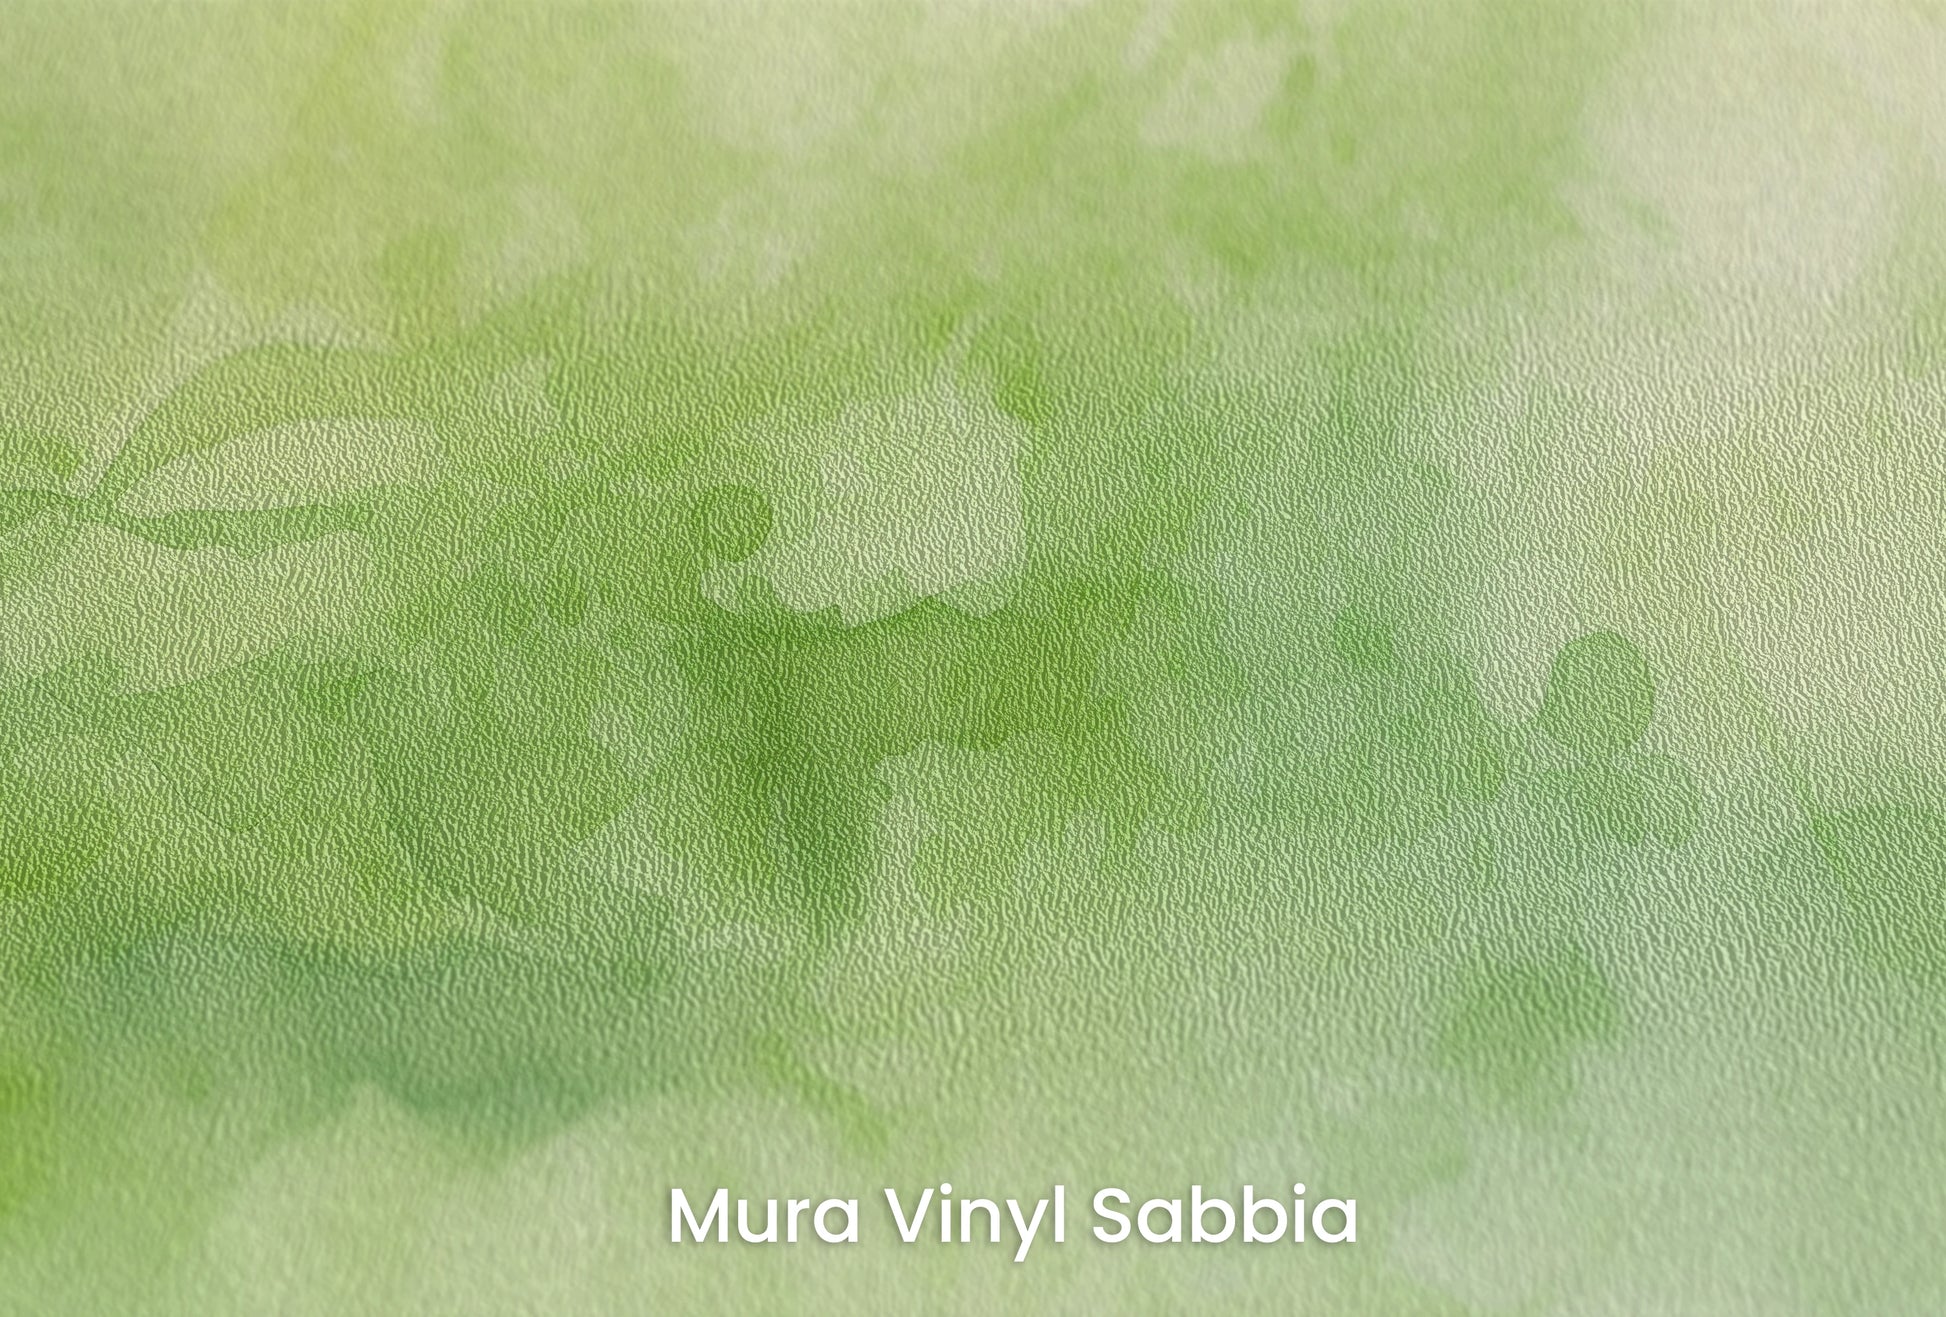 Zbliżenie na artystyczną fototapetę o nazwie Leśna Mgła na podłożu Mura Vinyl Sabbia struktura grubego ziarna piasku.